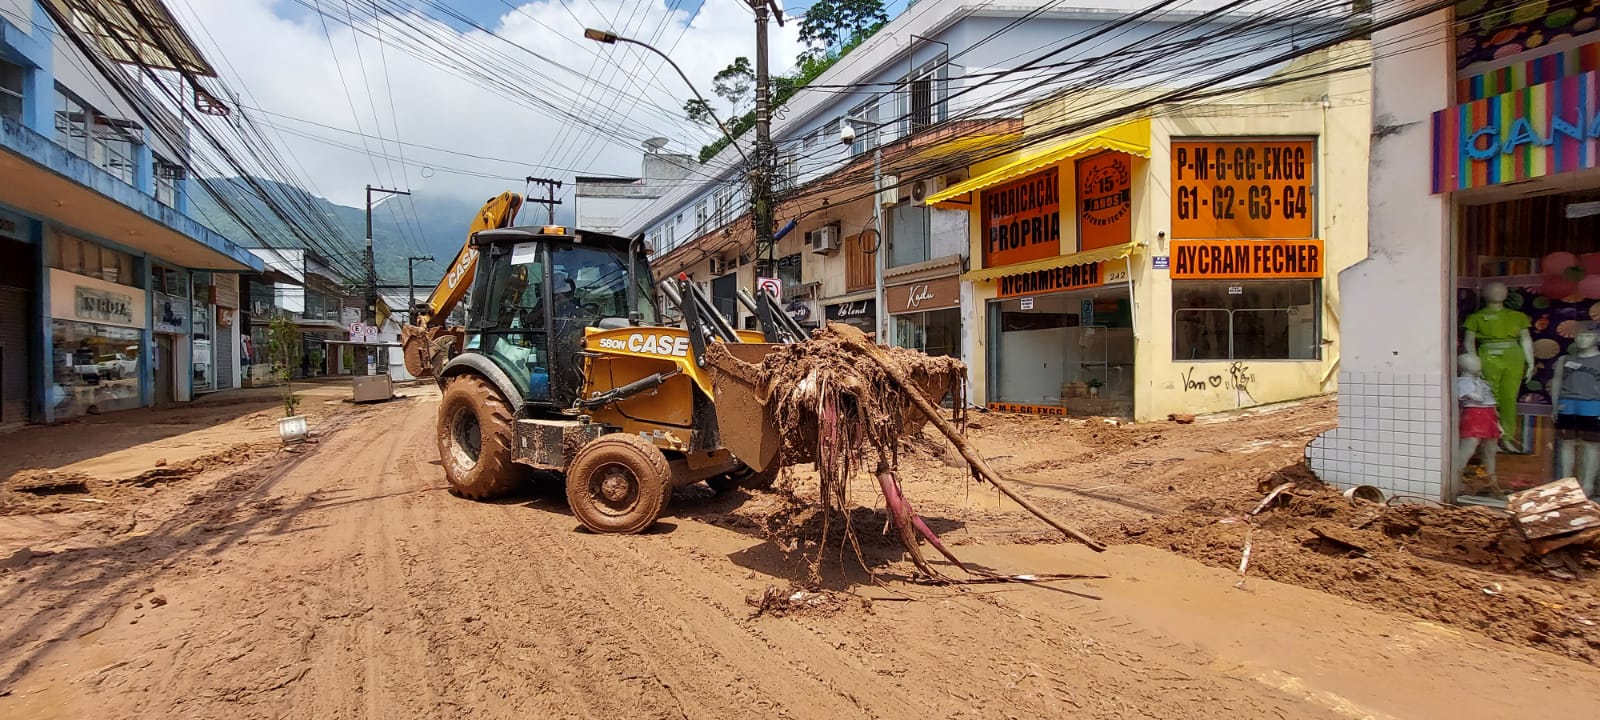 Tragédia em Petrópolis: Governo do Estado mobiliza força-tarefa para chegada de equipamentos a Petrópolis